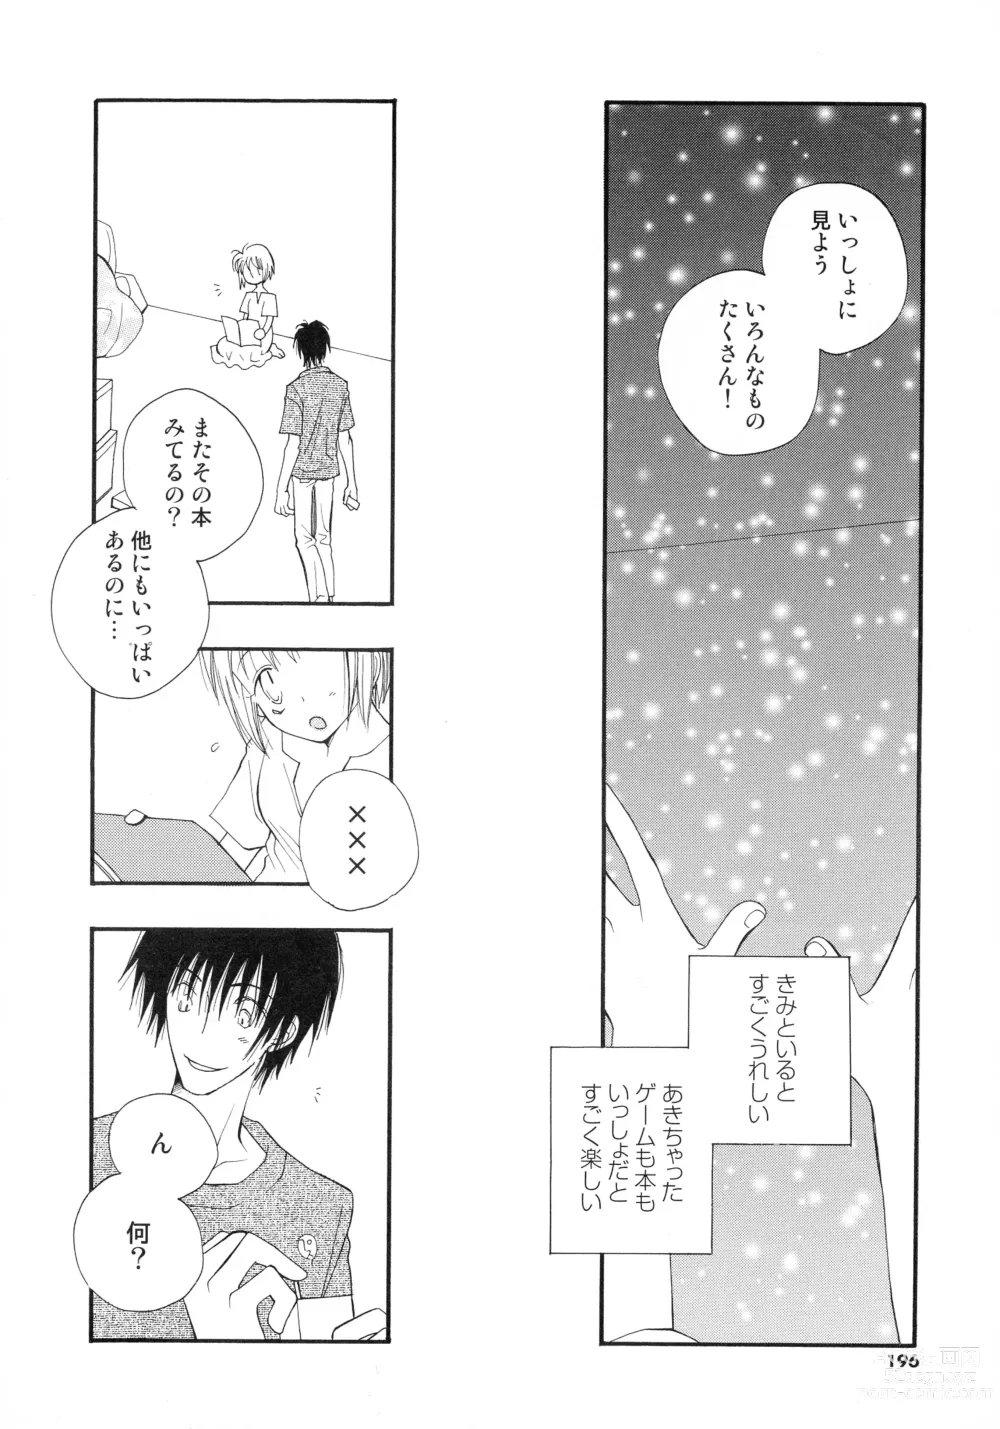 Page 193 of manga Cherry♥Pai Shinsouban